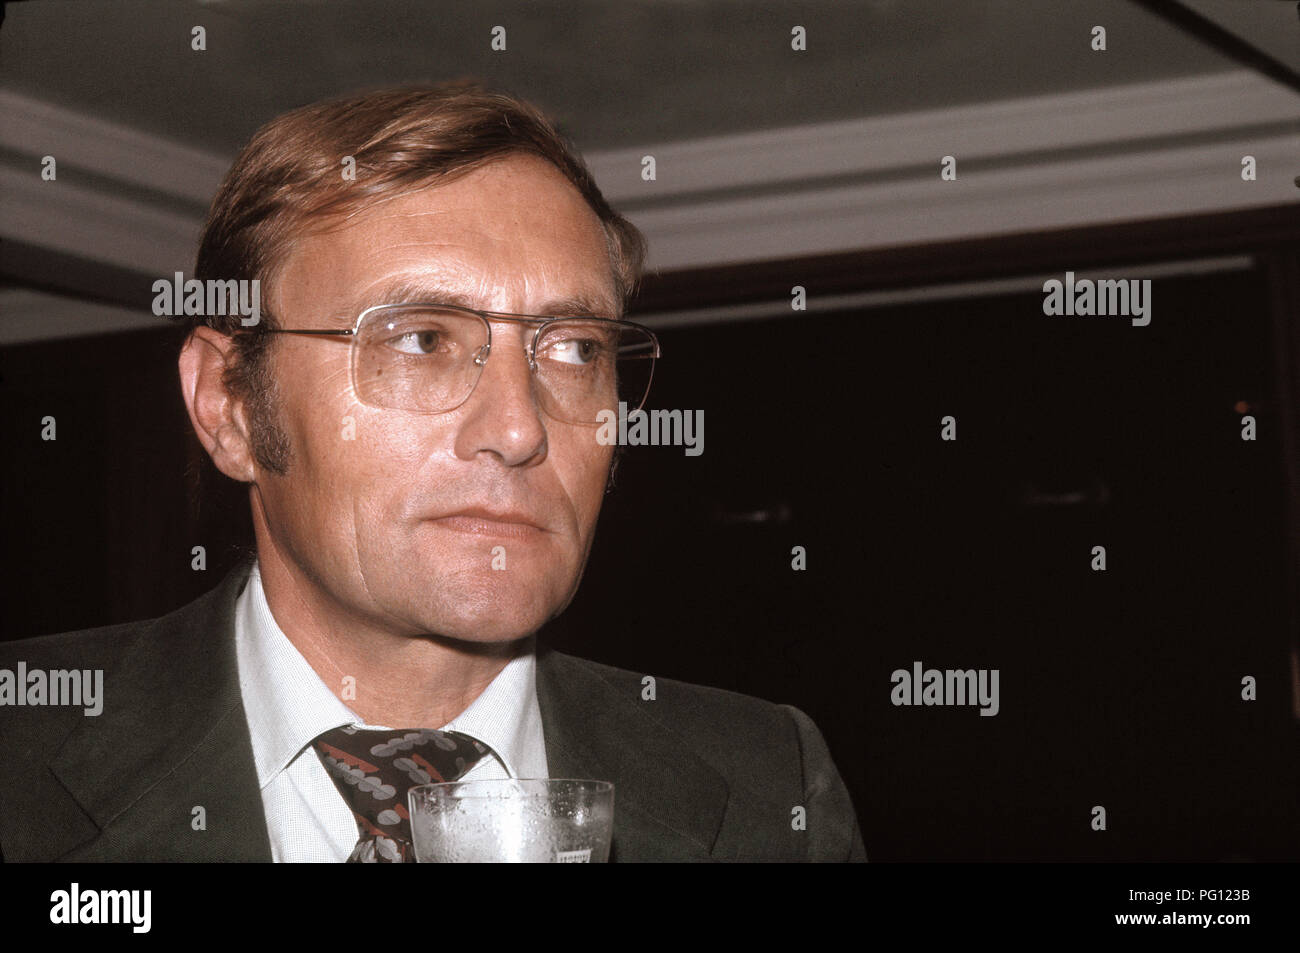 Rudolf Augstein (Journalist, Verleger, Journalist und Gründer des Magazins  "Der Spiegel") - 10/09/1972 Stockfotografie - Alamy